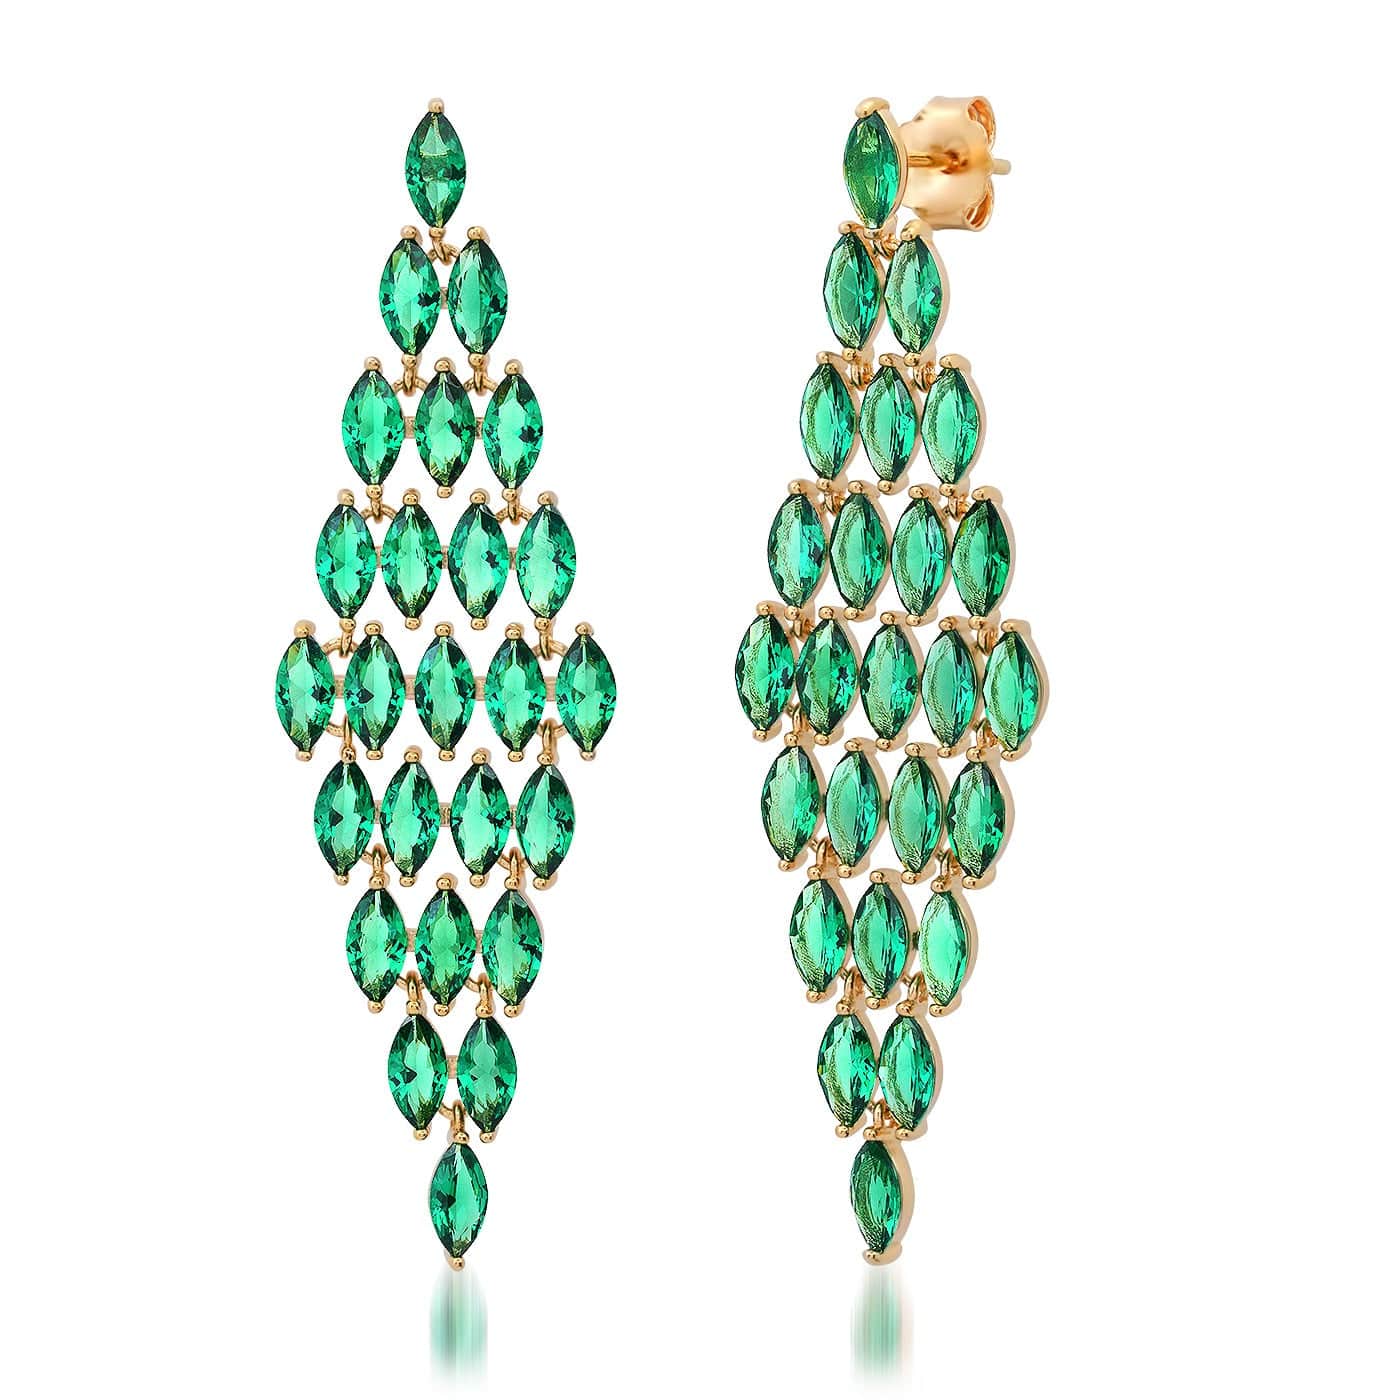 TAI JEWELRY Earrings Emerald Green Cascading Marquis Chandelier Earrings